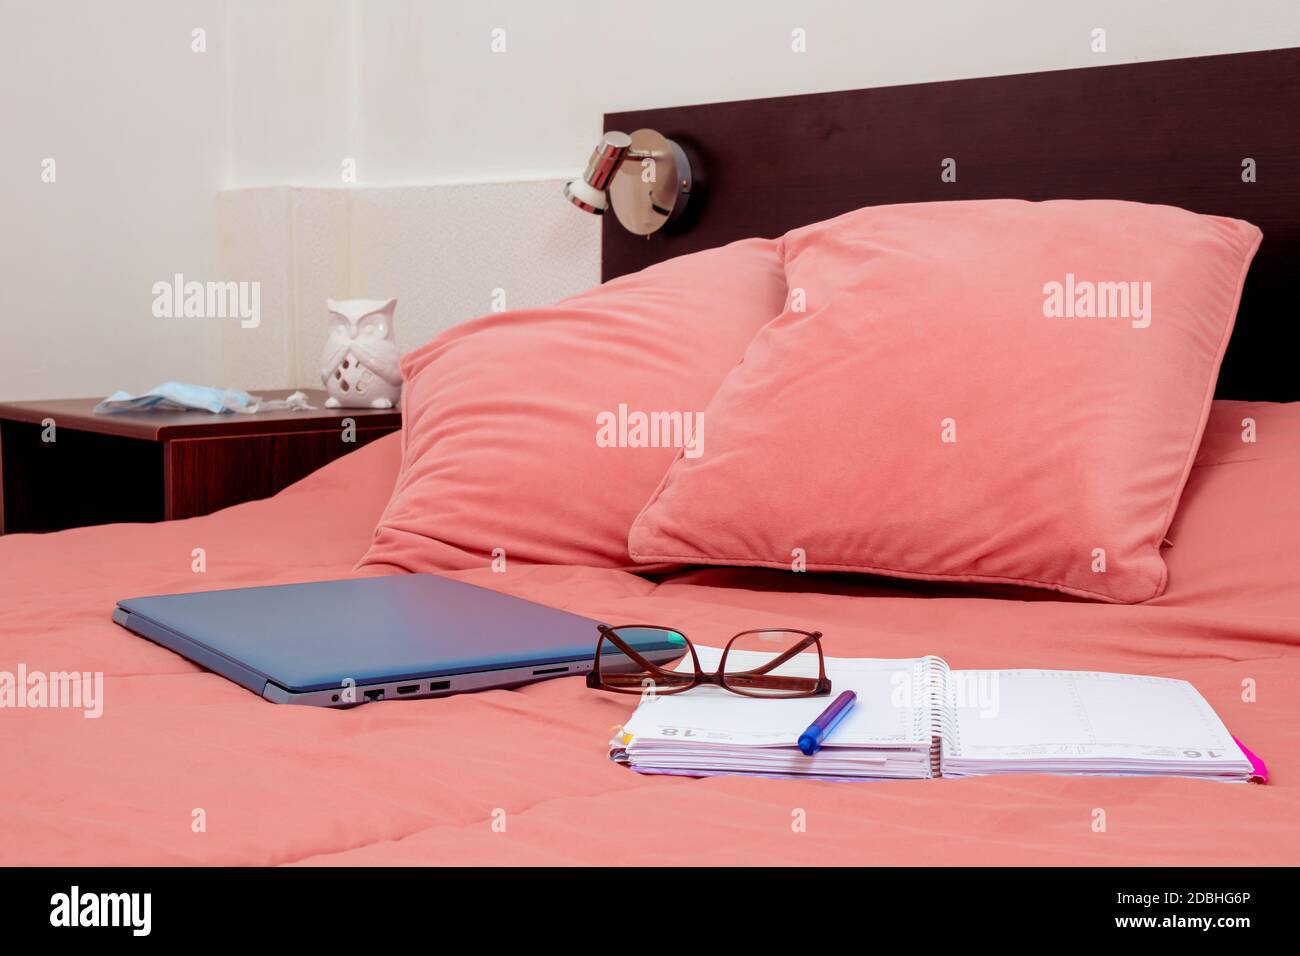 Geschlossener Laptop, Tagebuch und Gläser auf einem Bett im Schlafzimmer. Ich arbeite von zu Hause aus, eine bequeme Form der Kommunikation oder Unterhaltung. Aktuelles Konzept der Arbeit Stockfoto